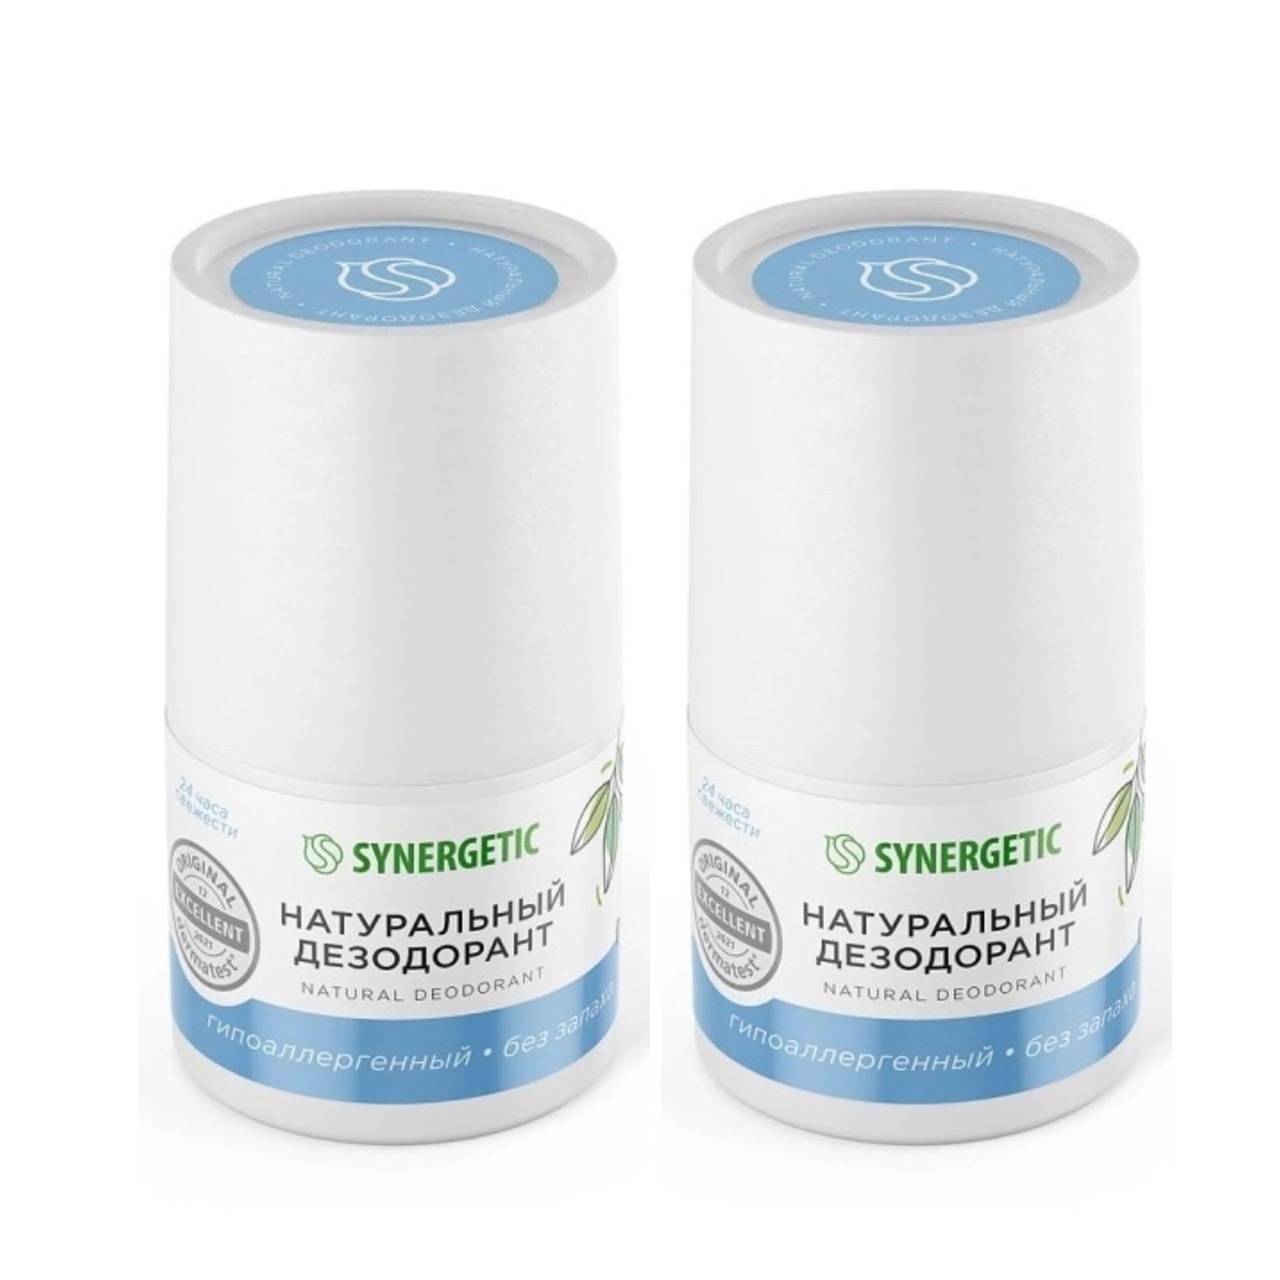 Натуральный дезодорант Synergetic без запаха 50 мл 2 шт натуральный дезодорант synergetic без запаха 50 мл 2 шт